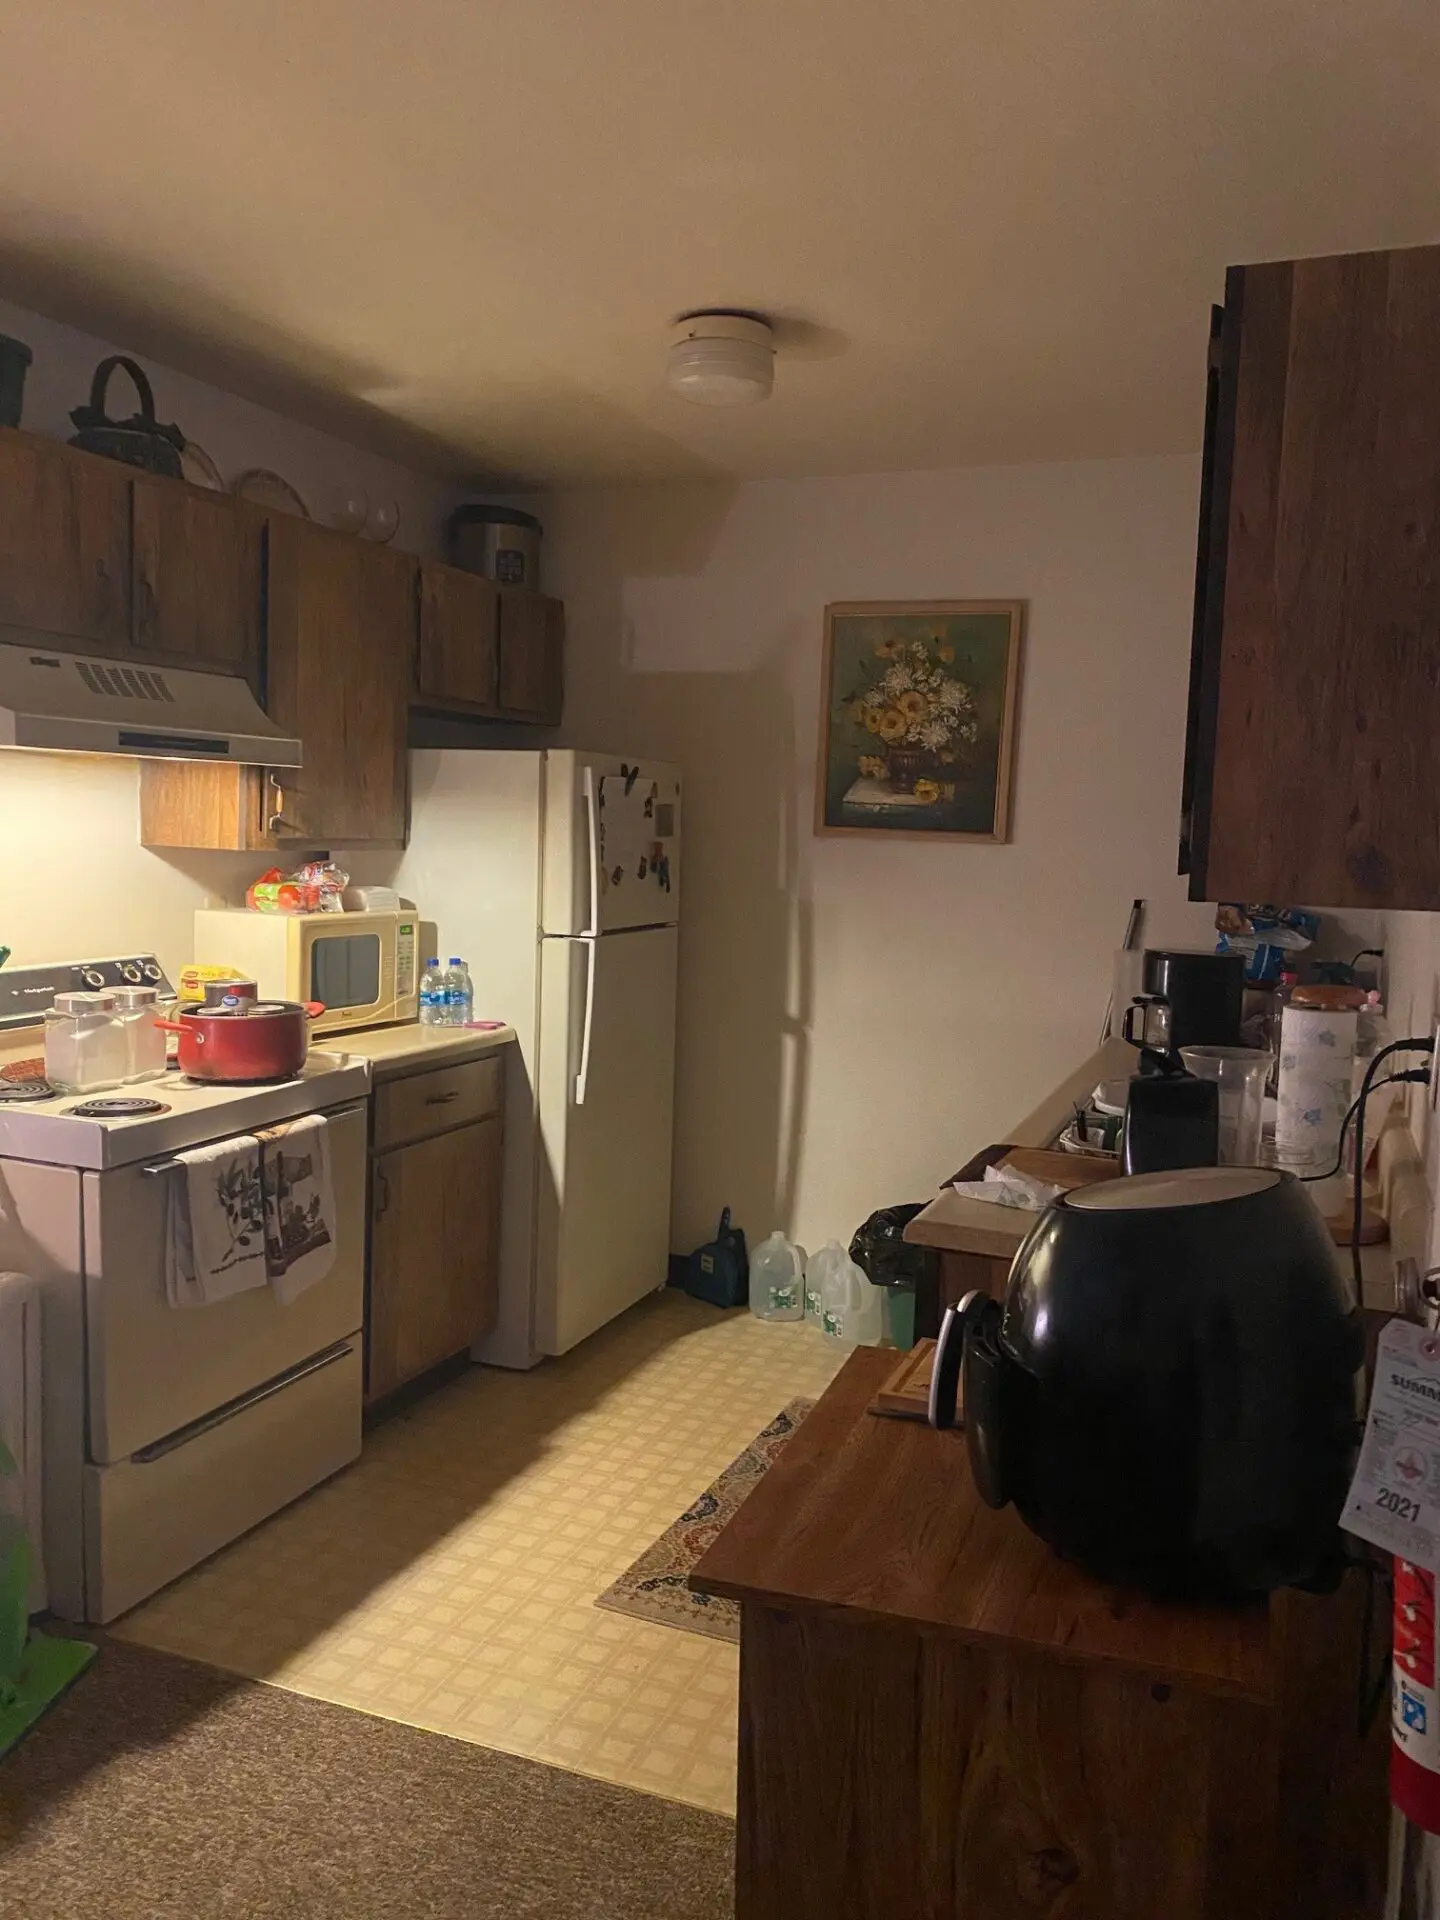 Ridgeview apartments kitchen